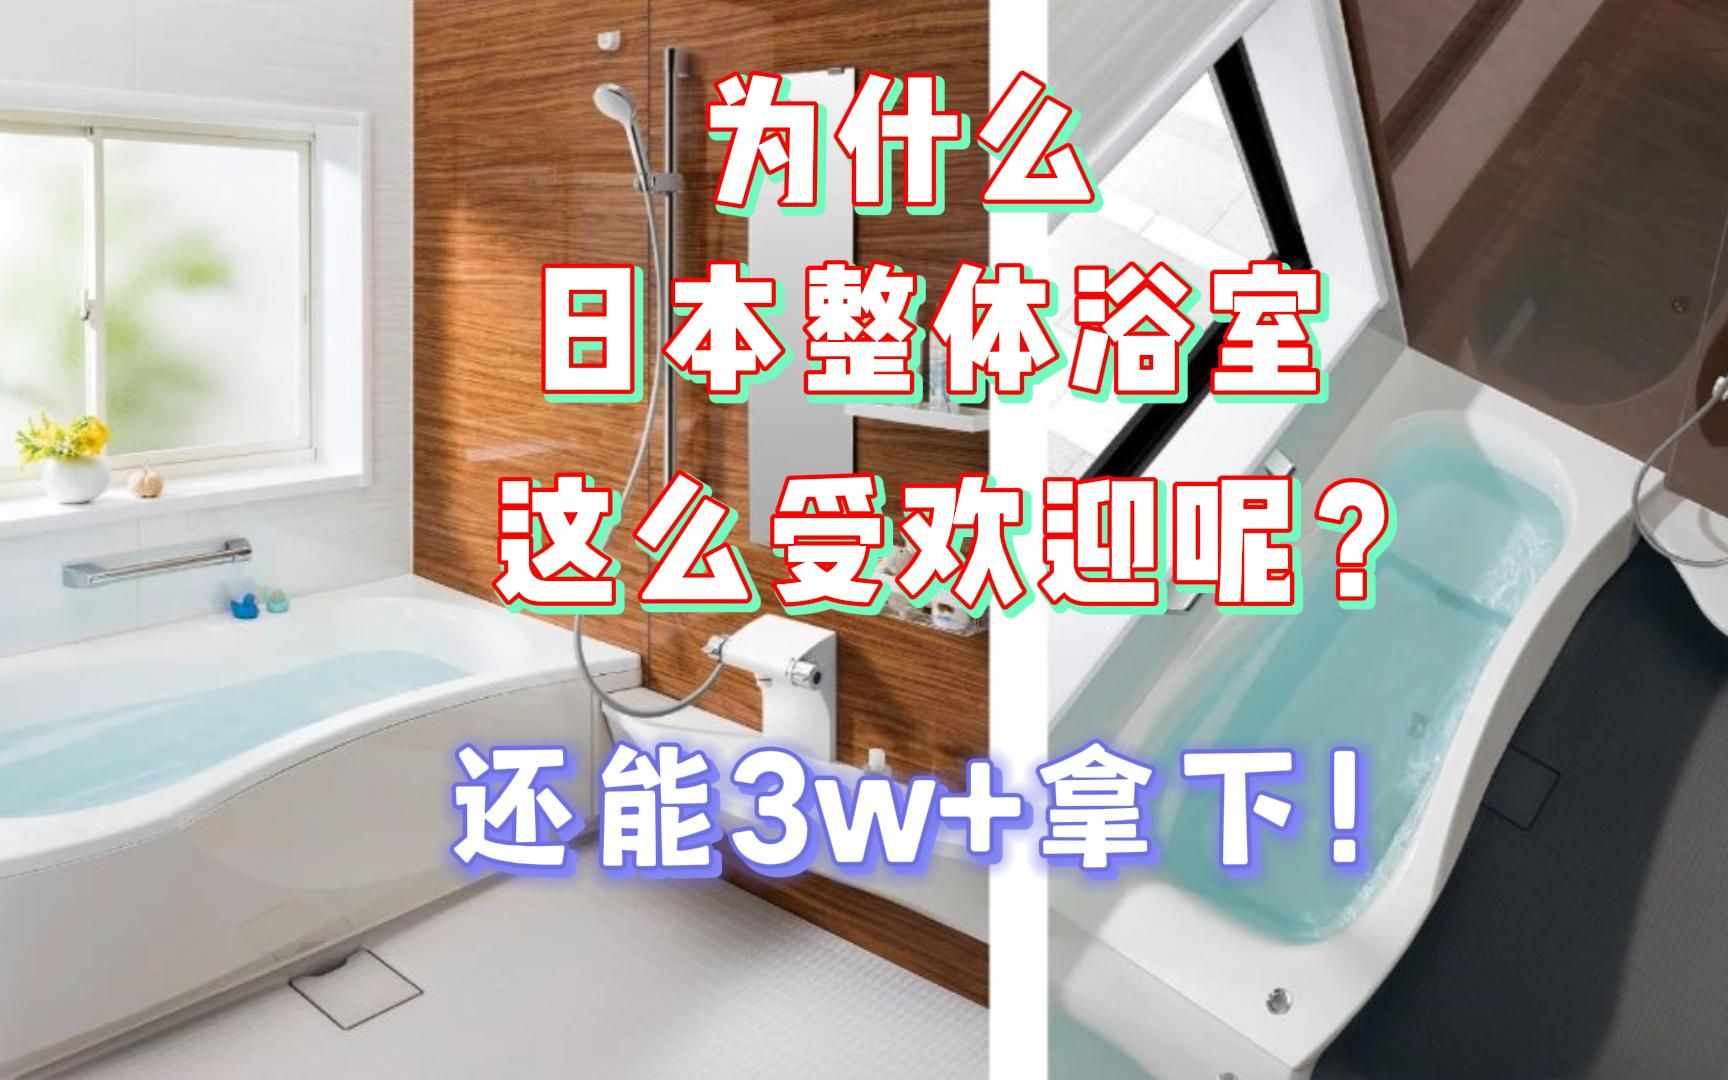 竟然3W+就能拿下！日本进口整体浴室——托客乐思/TOCLAS！只要看过/用过后，真的会沦陷了在这套整体浴室！